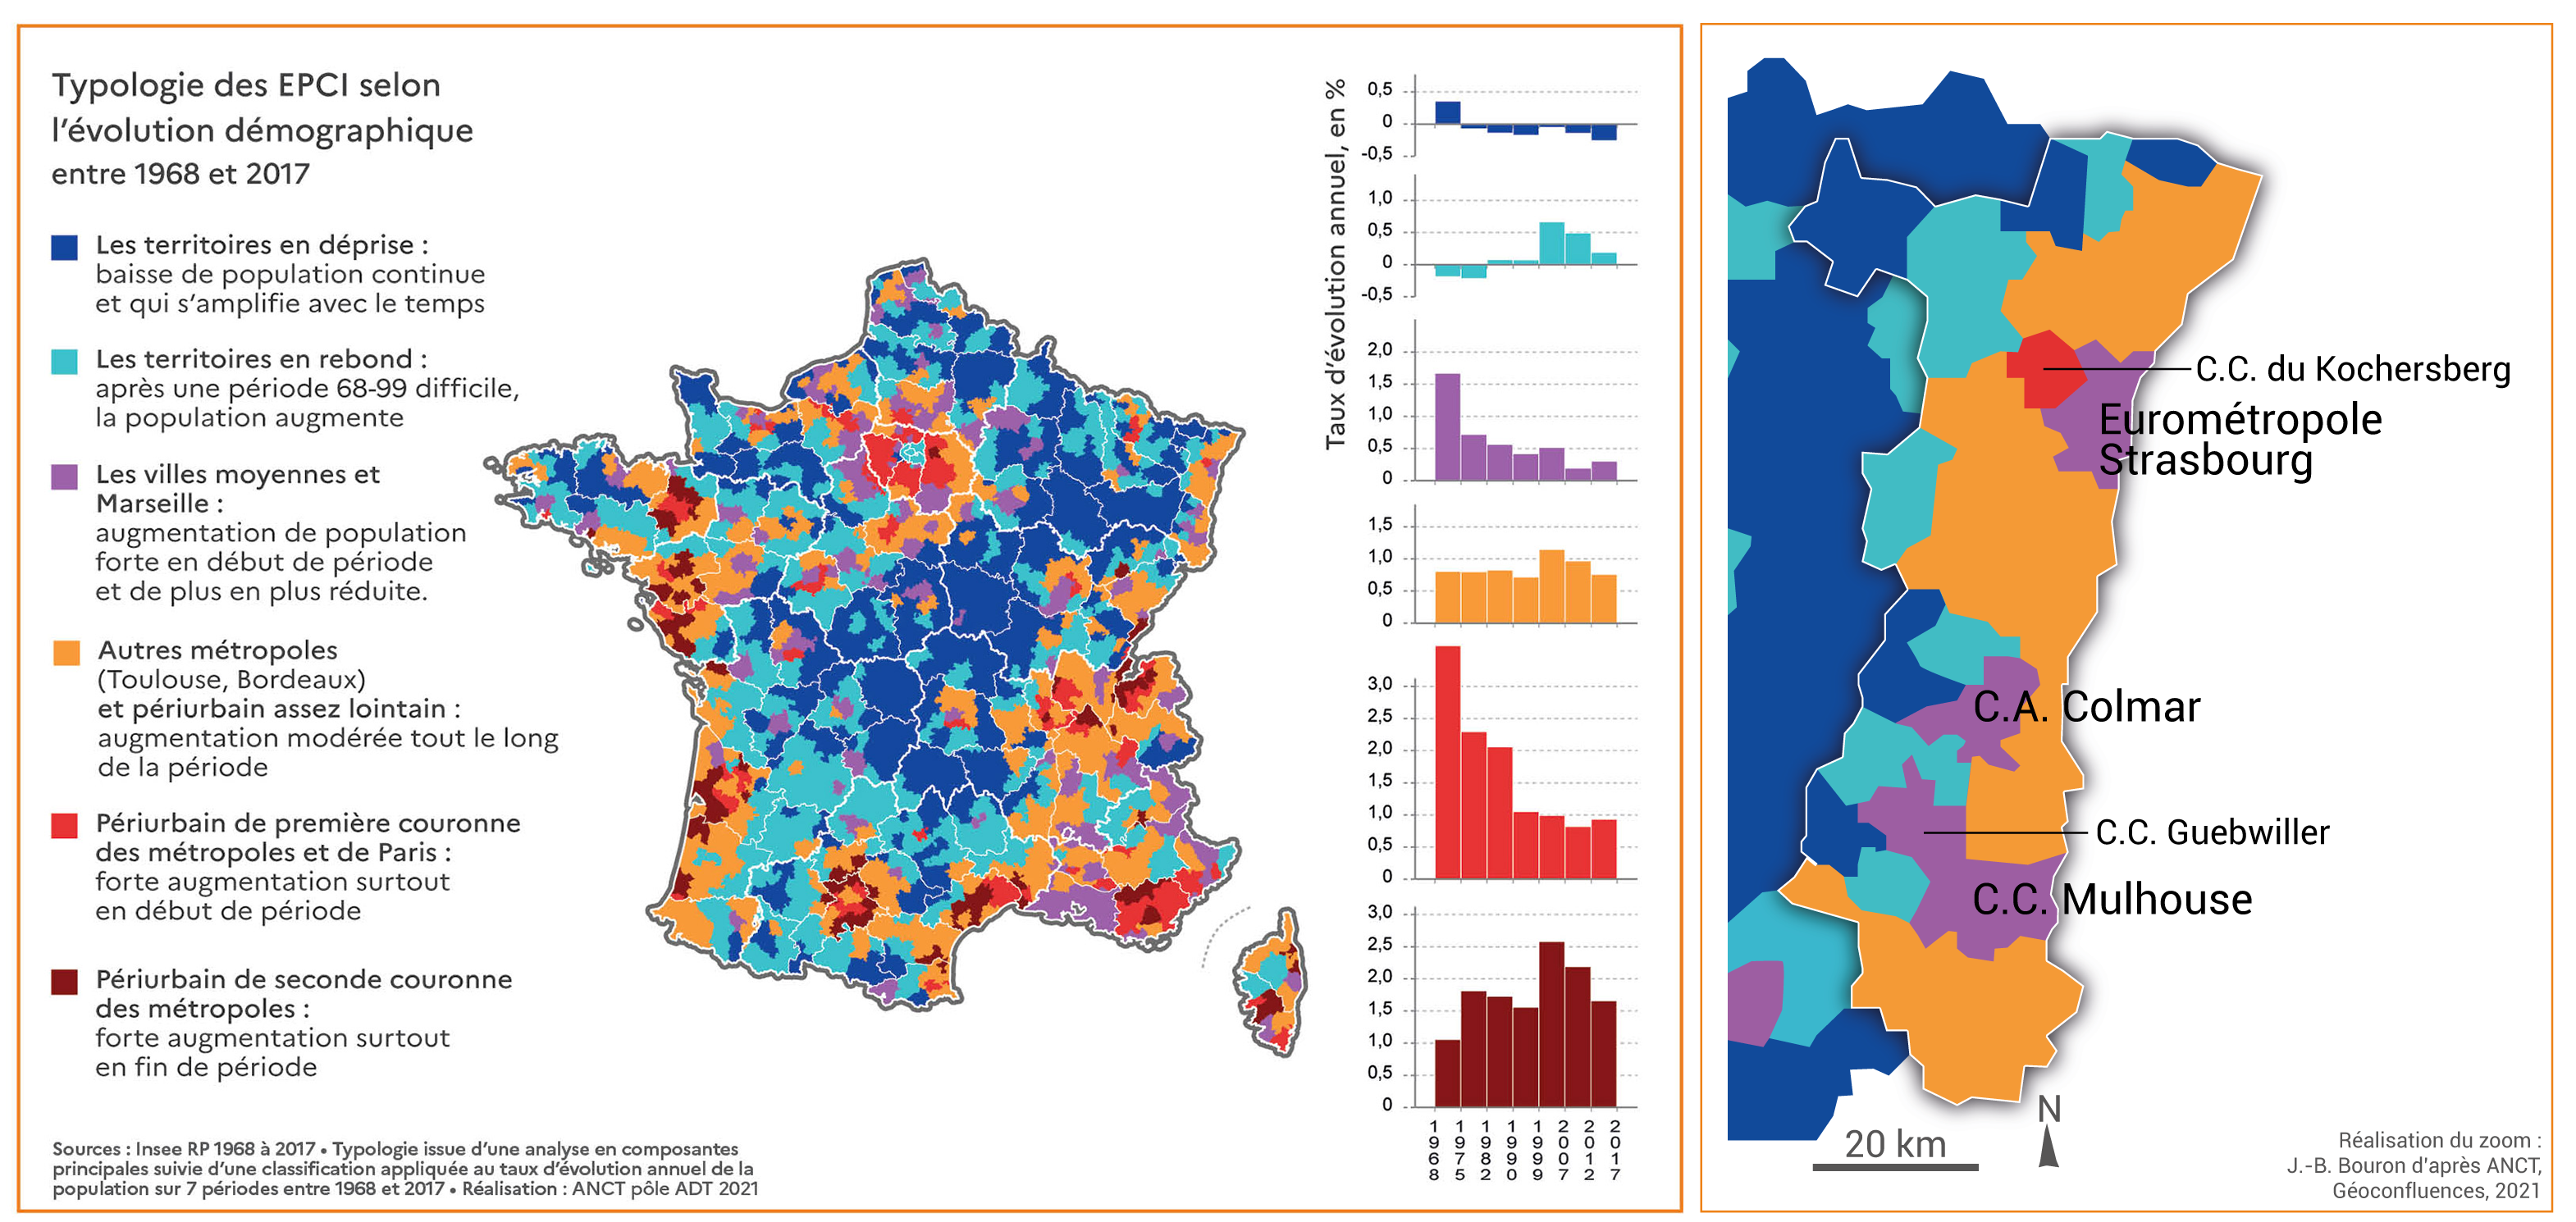 Évolution démographique des EPCI 1968-2017 (Alsace) (haute définition)